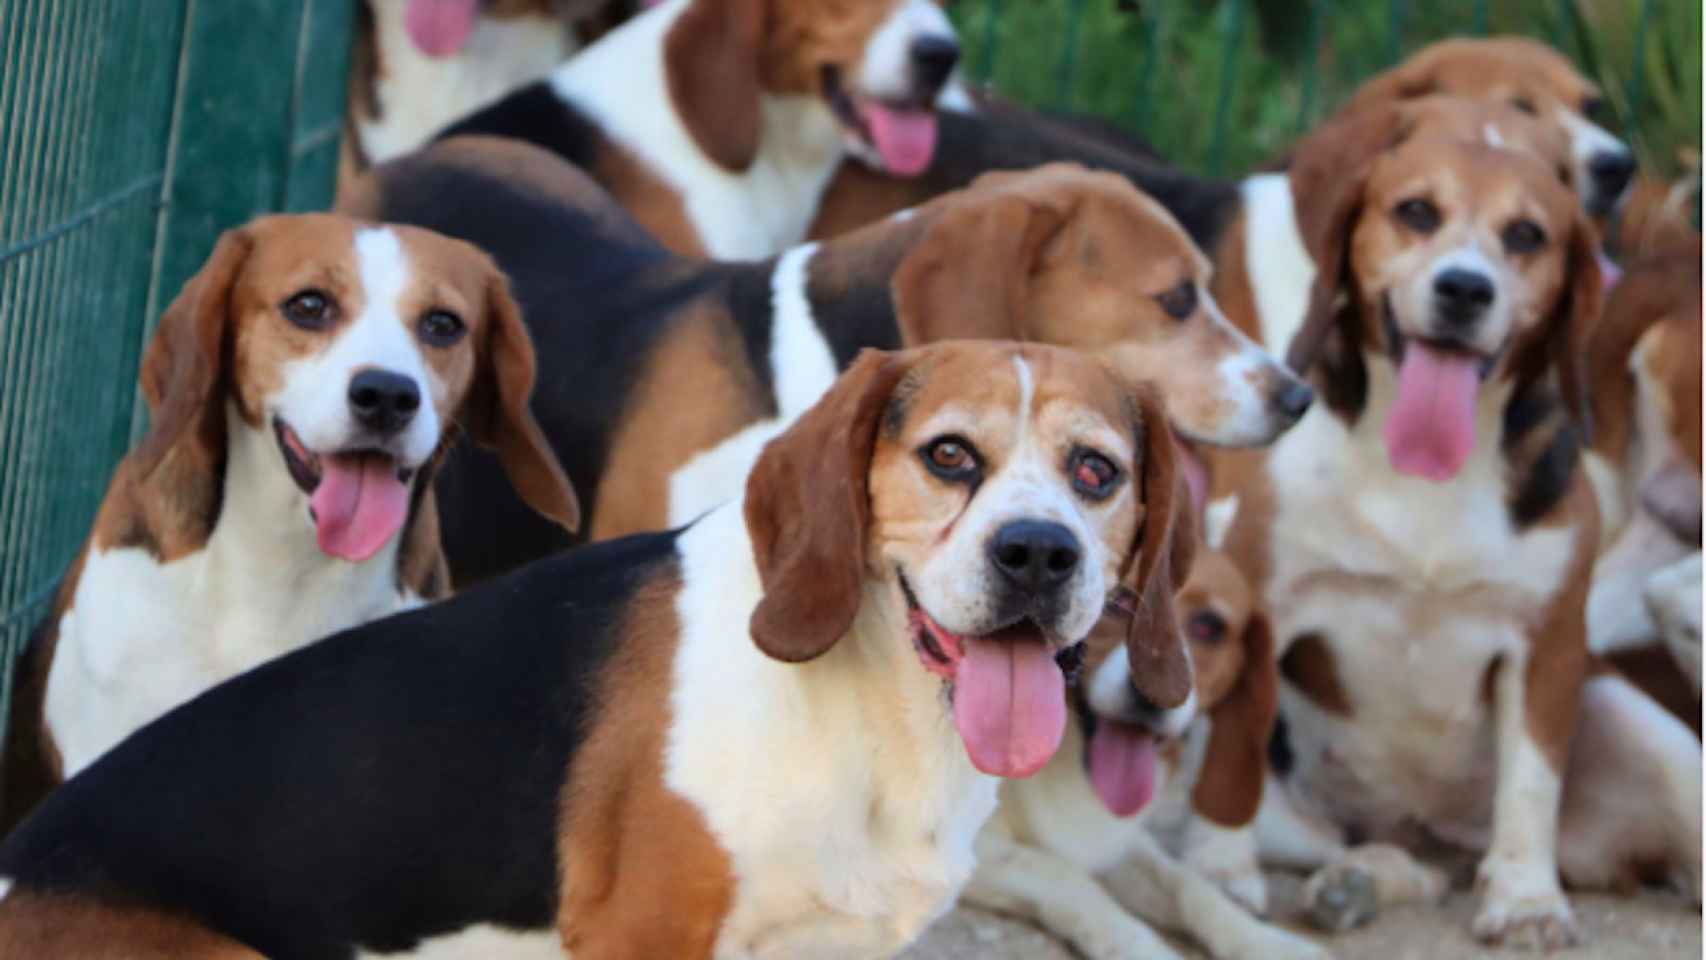 La asociación 'Animal Rescue España' le ha salvado la vida a una treintena de perros de la raza Beagle / ANIMAL RESCUE ESPAÑA